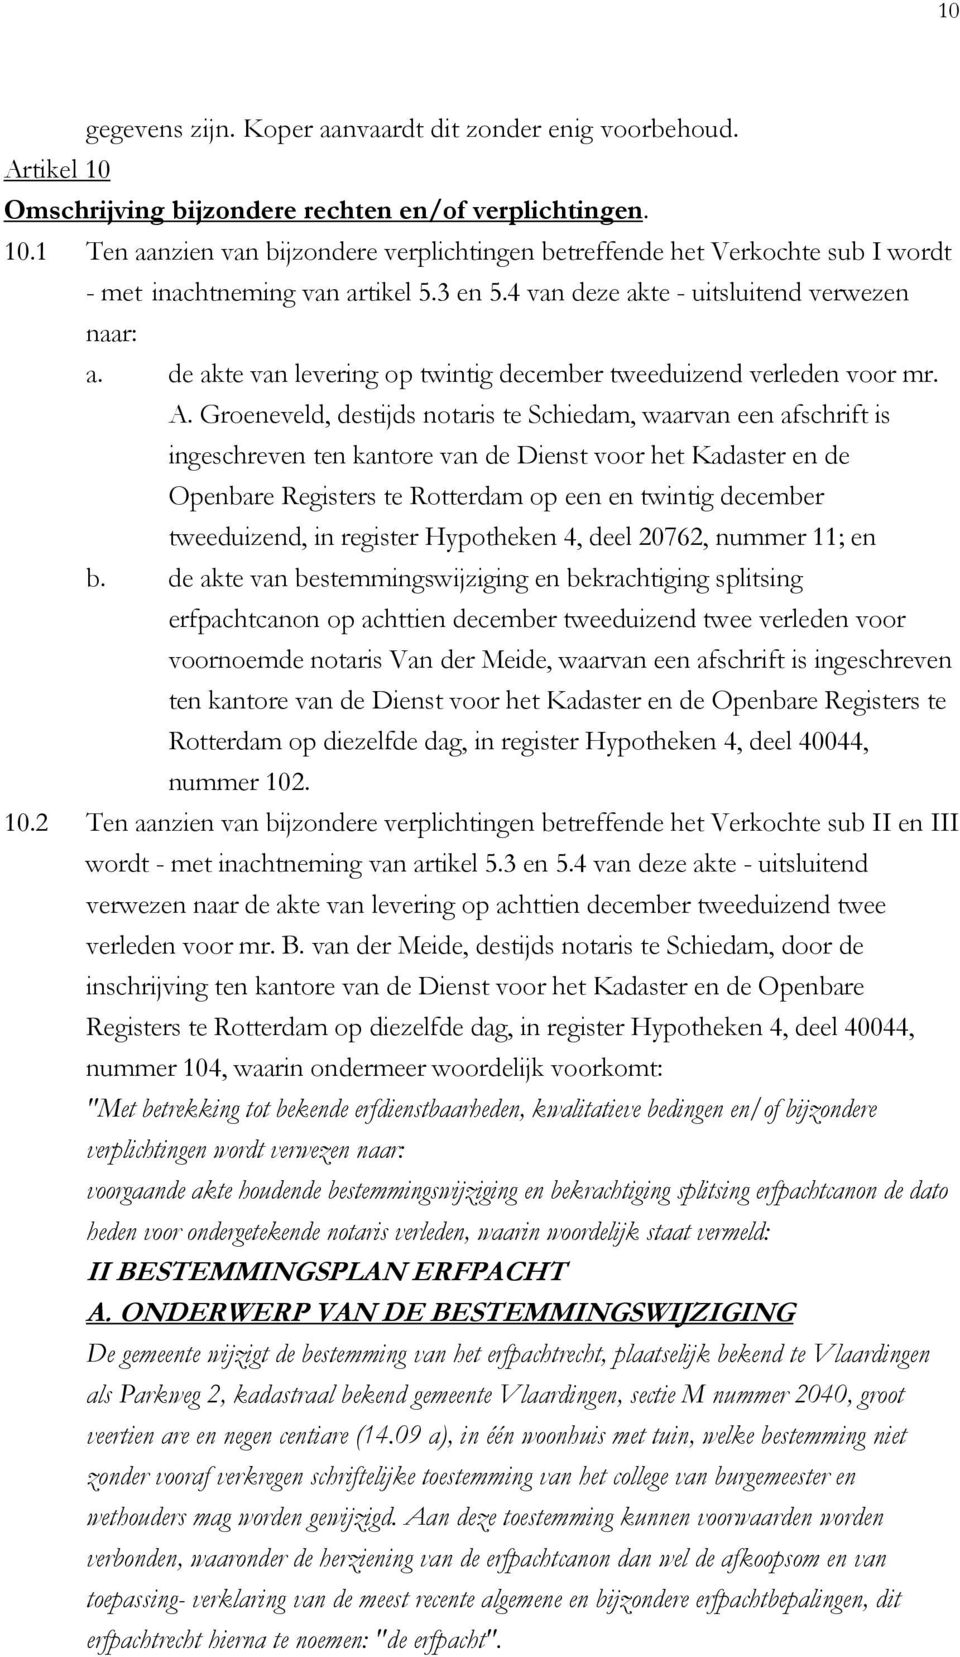 Groeneveld, destijds notaris te Schiedam, waarvan een afschrift is ingeschreven ten kantore van de Dienst voor het Kadaster en de Openbare Registers te Rotterdam op een en twintig december